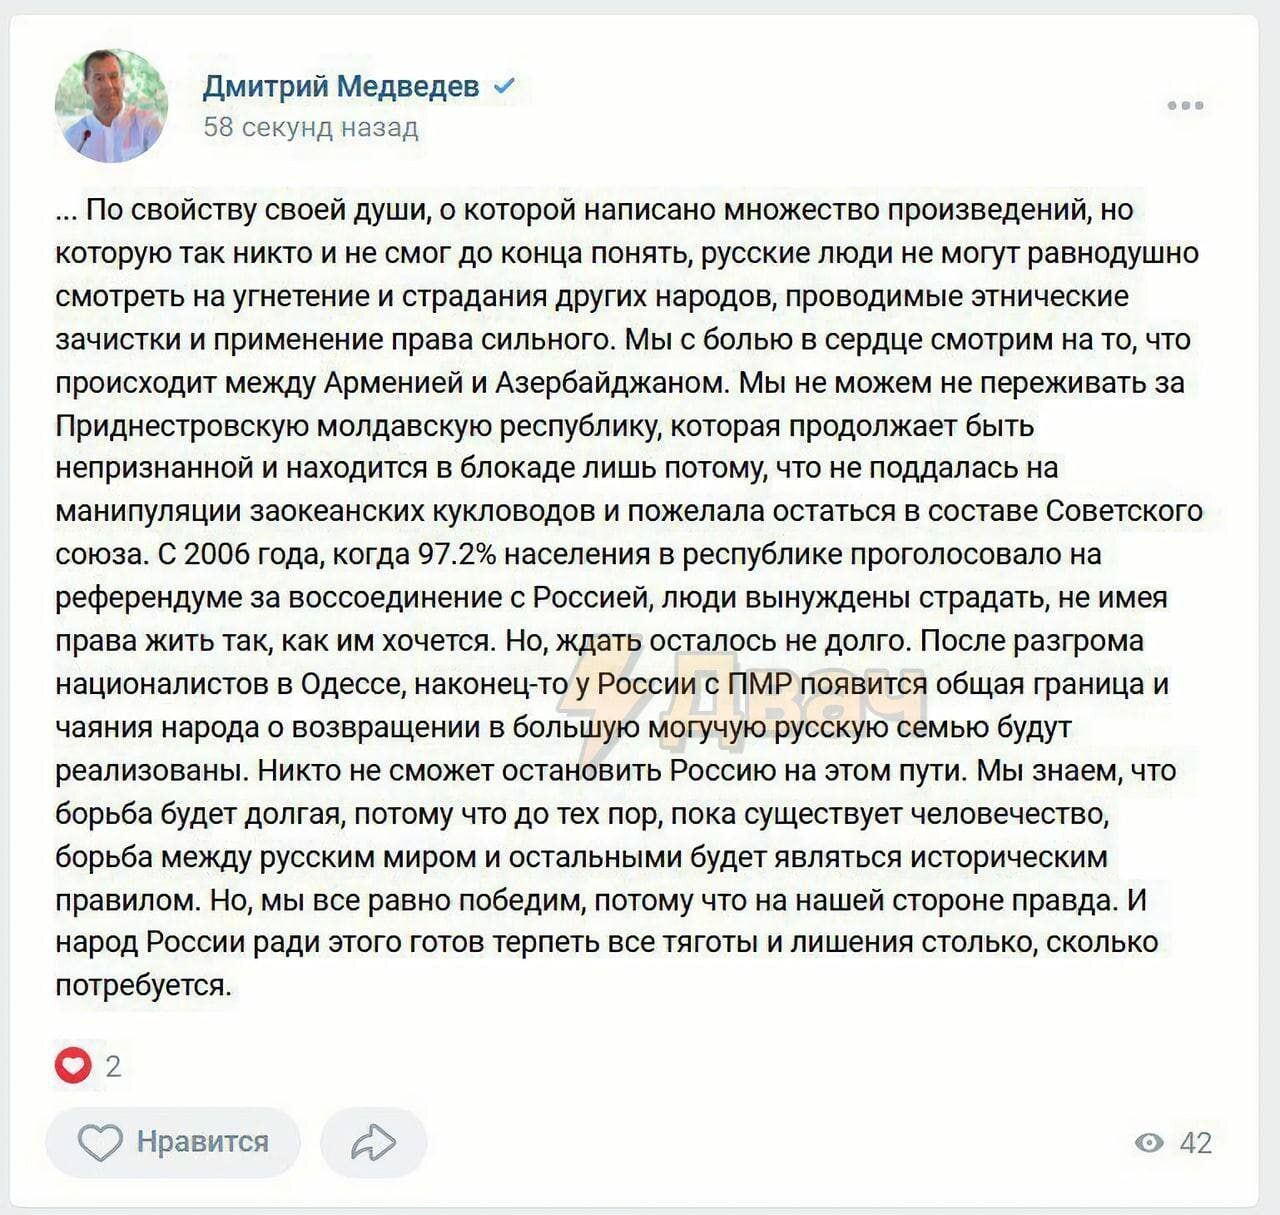 Pe pagina lui Medvedev a apărut un mesaj despre frontiera Rusiei cu Transnistria. După care a fost șters